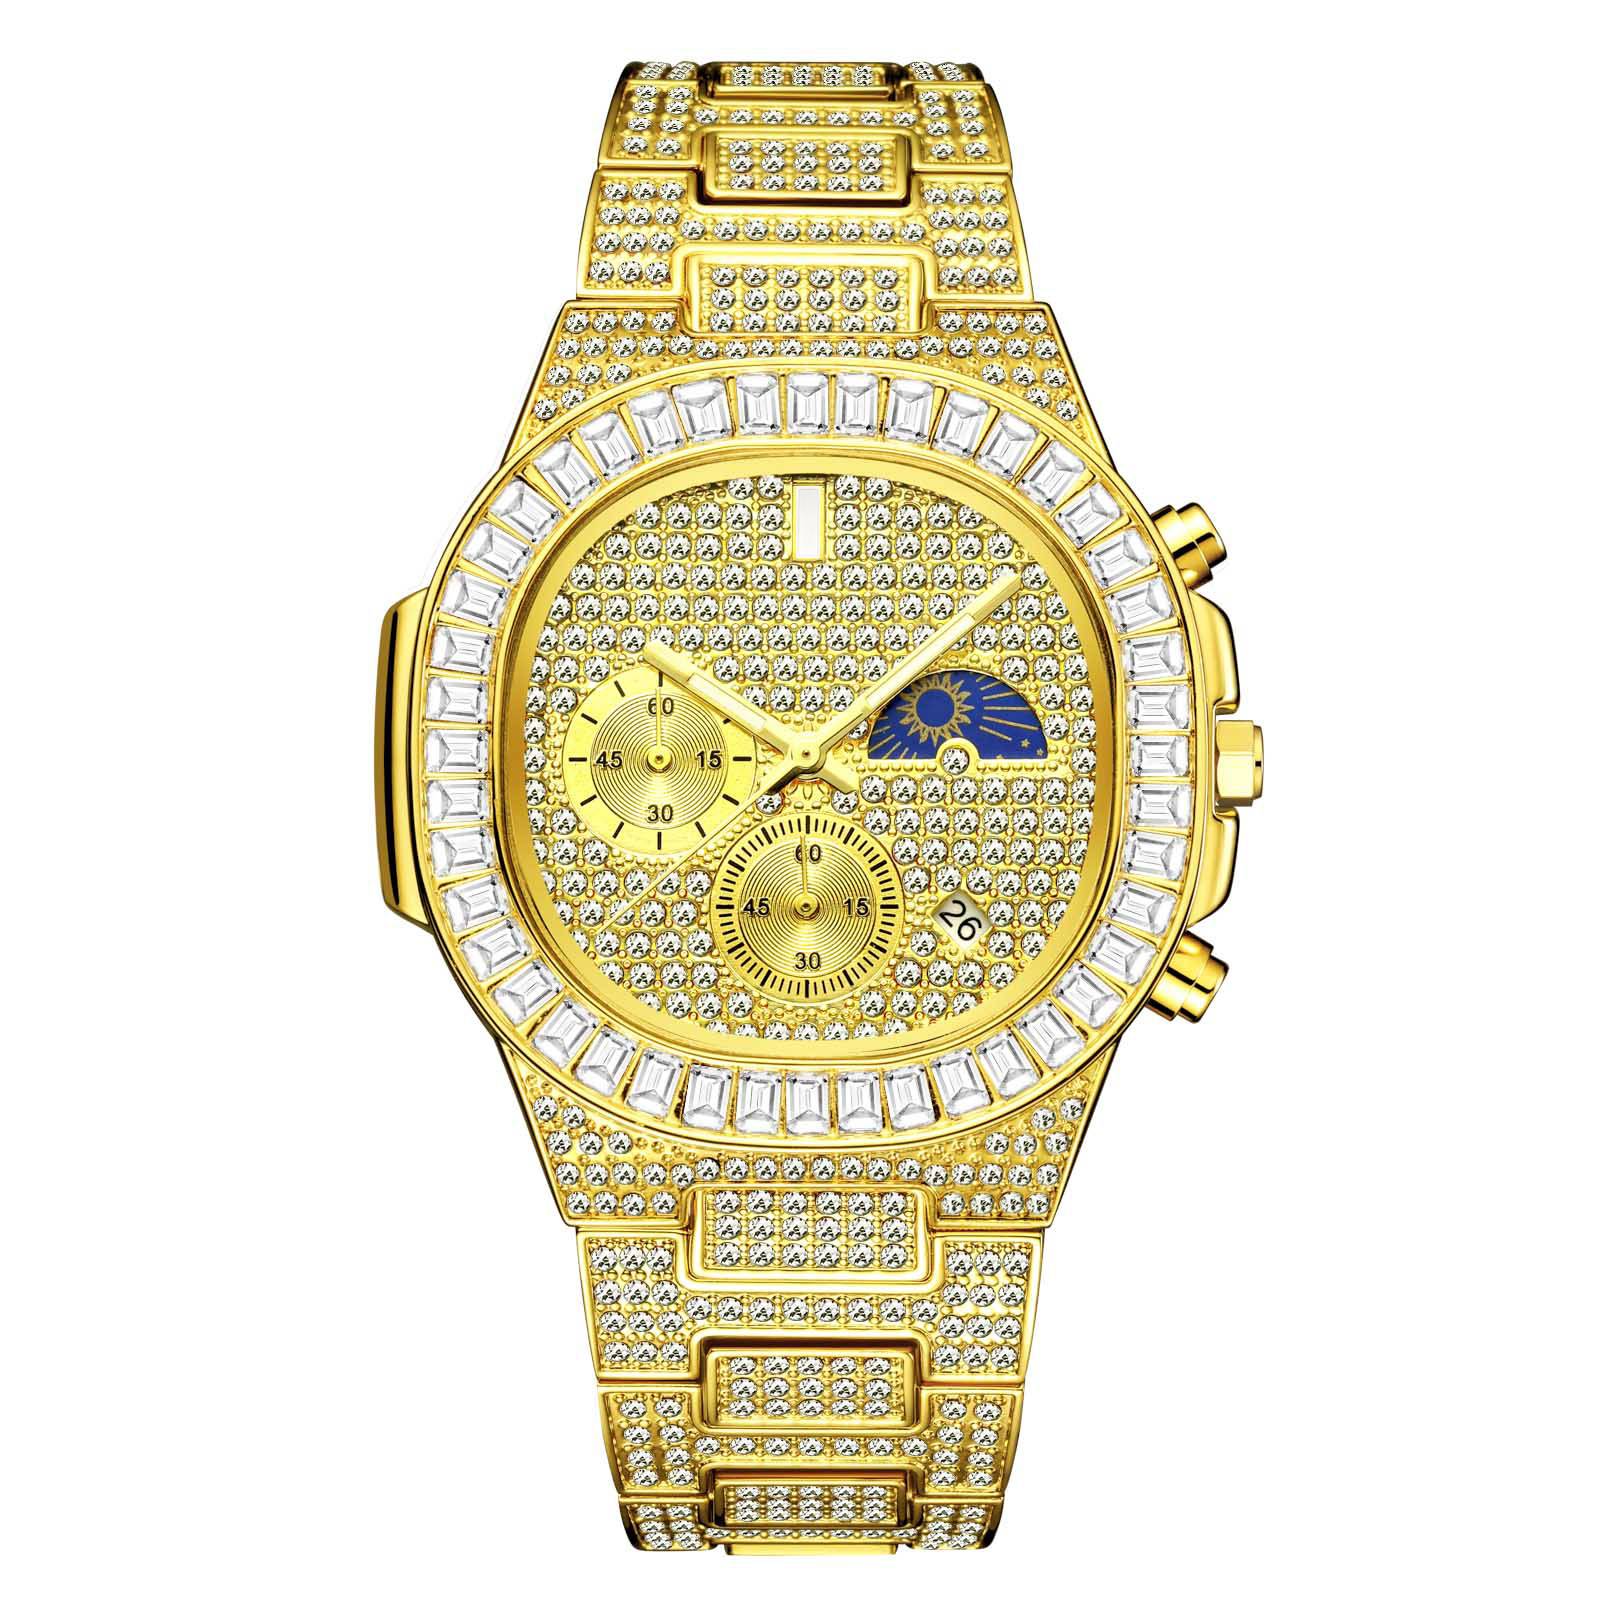 豪华男子石英手表自动日期计时量表高端顶级品牌防水钻石挡板月球阶段男士手表